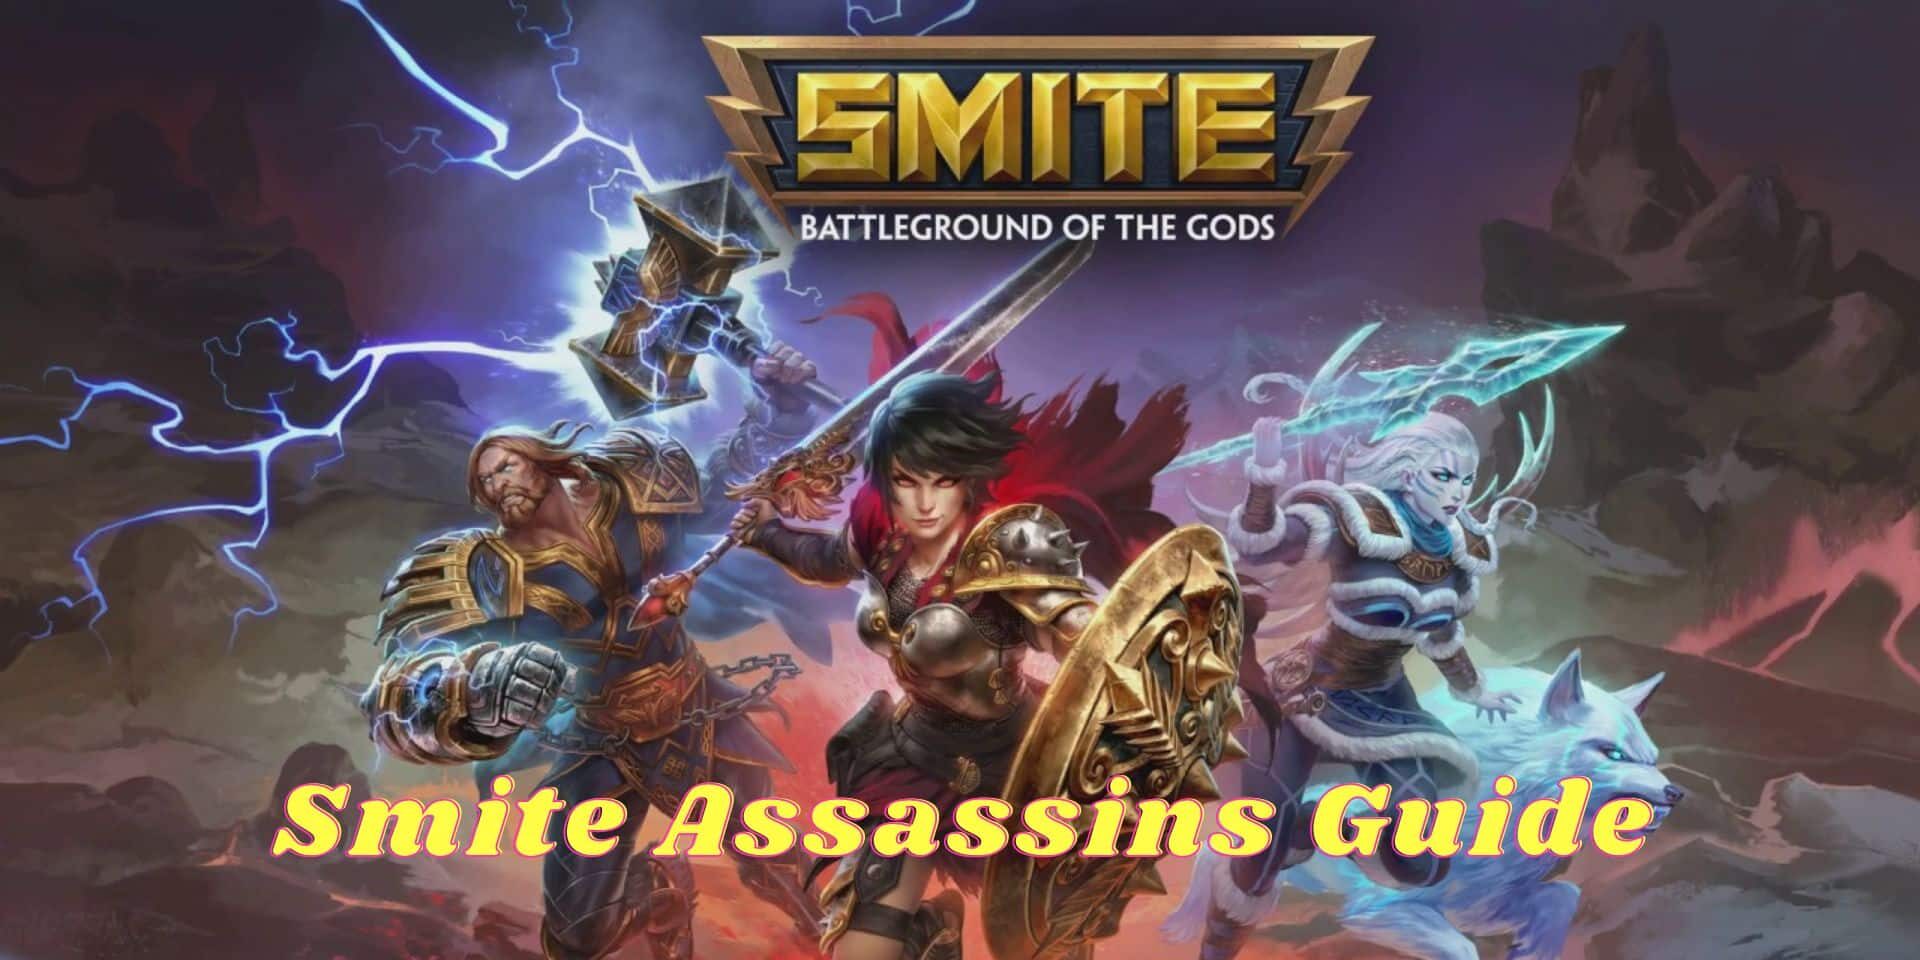 Smite Assassins Guide 1 aspect ratio 2 1